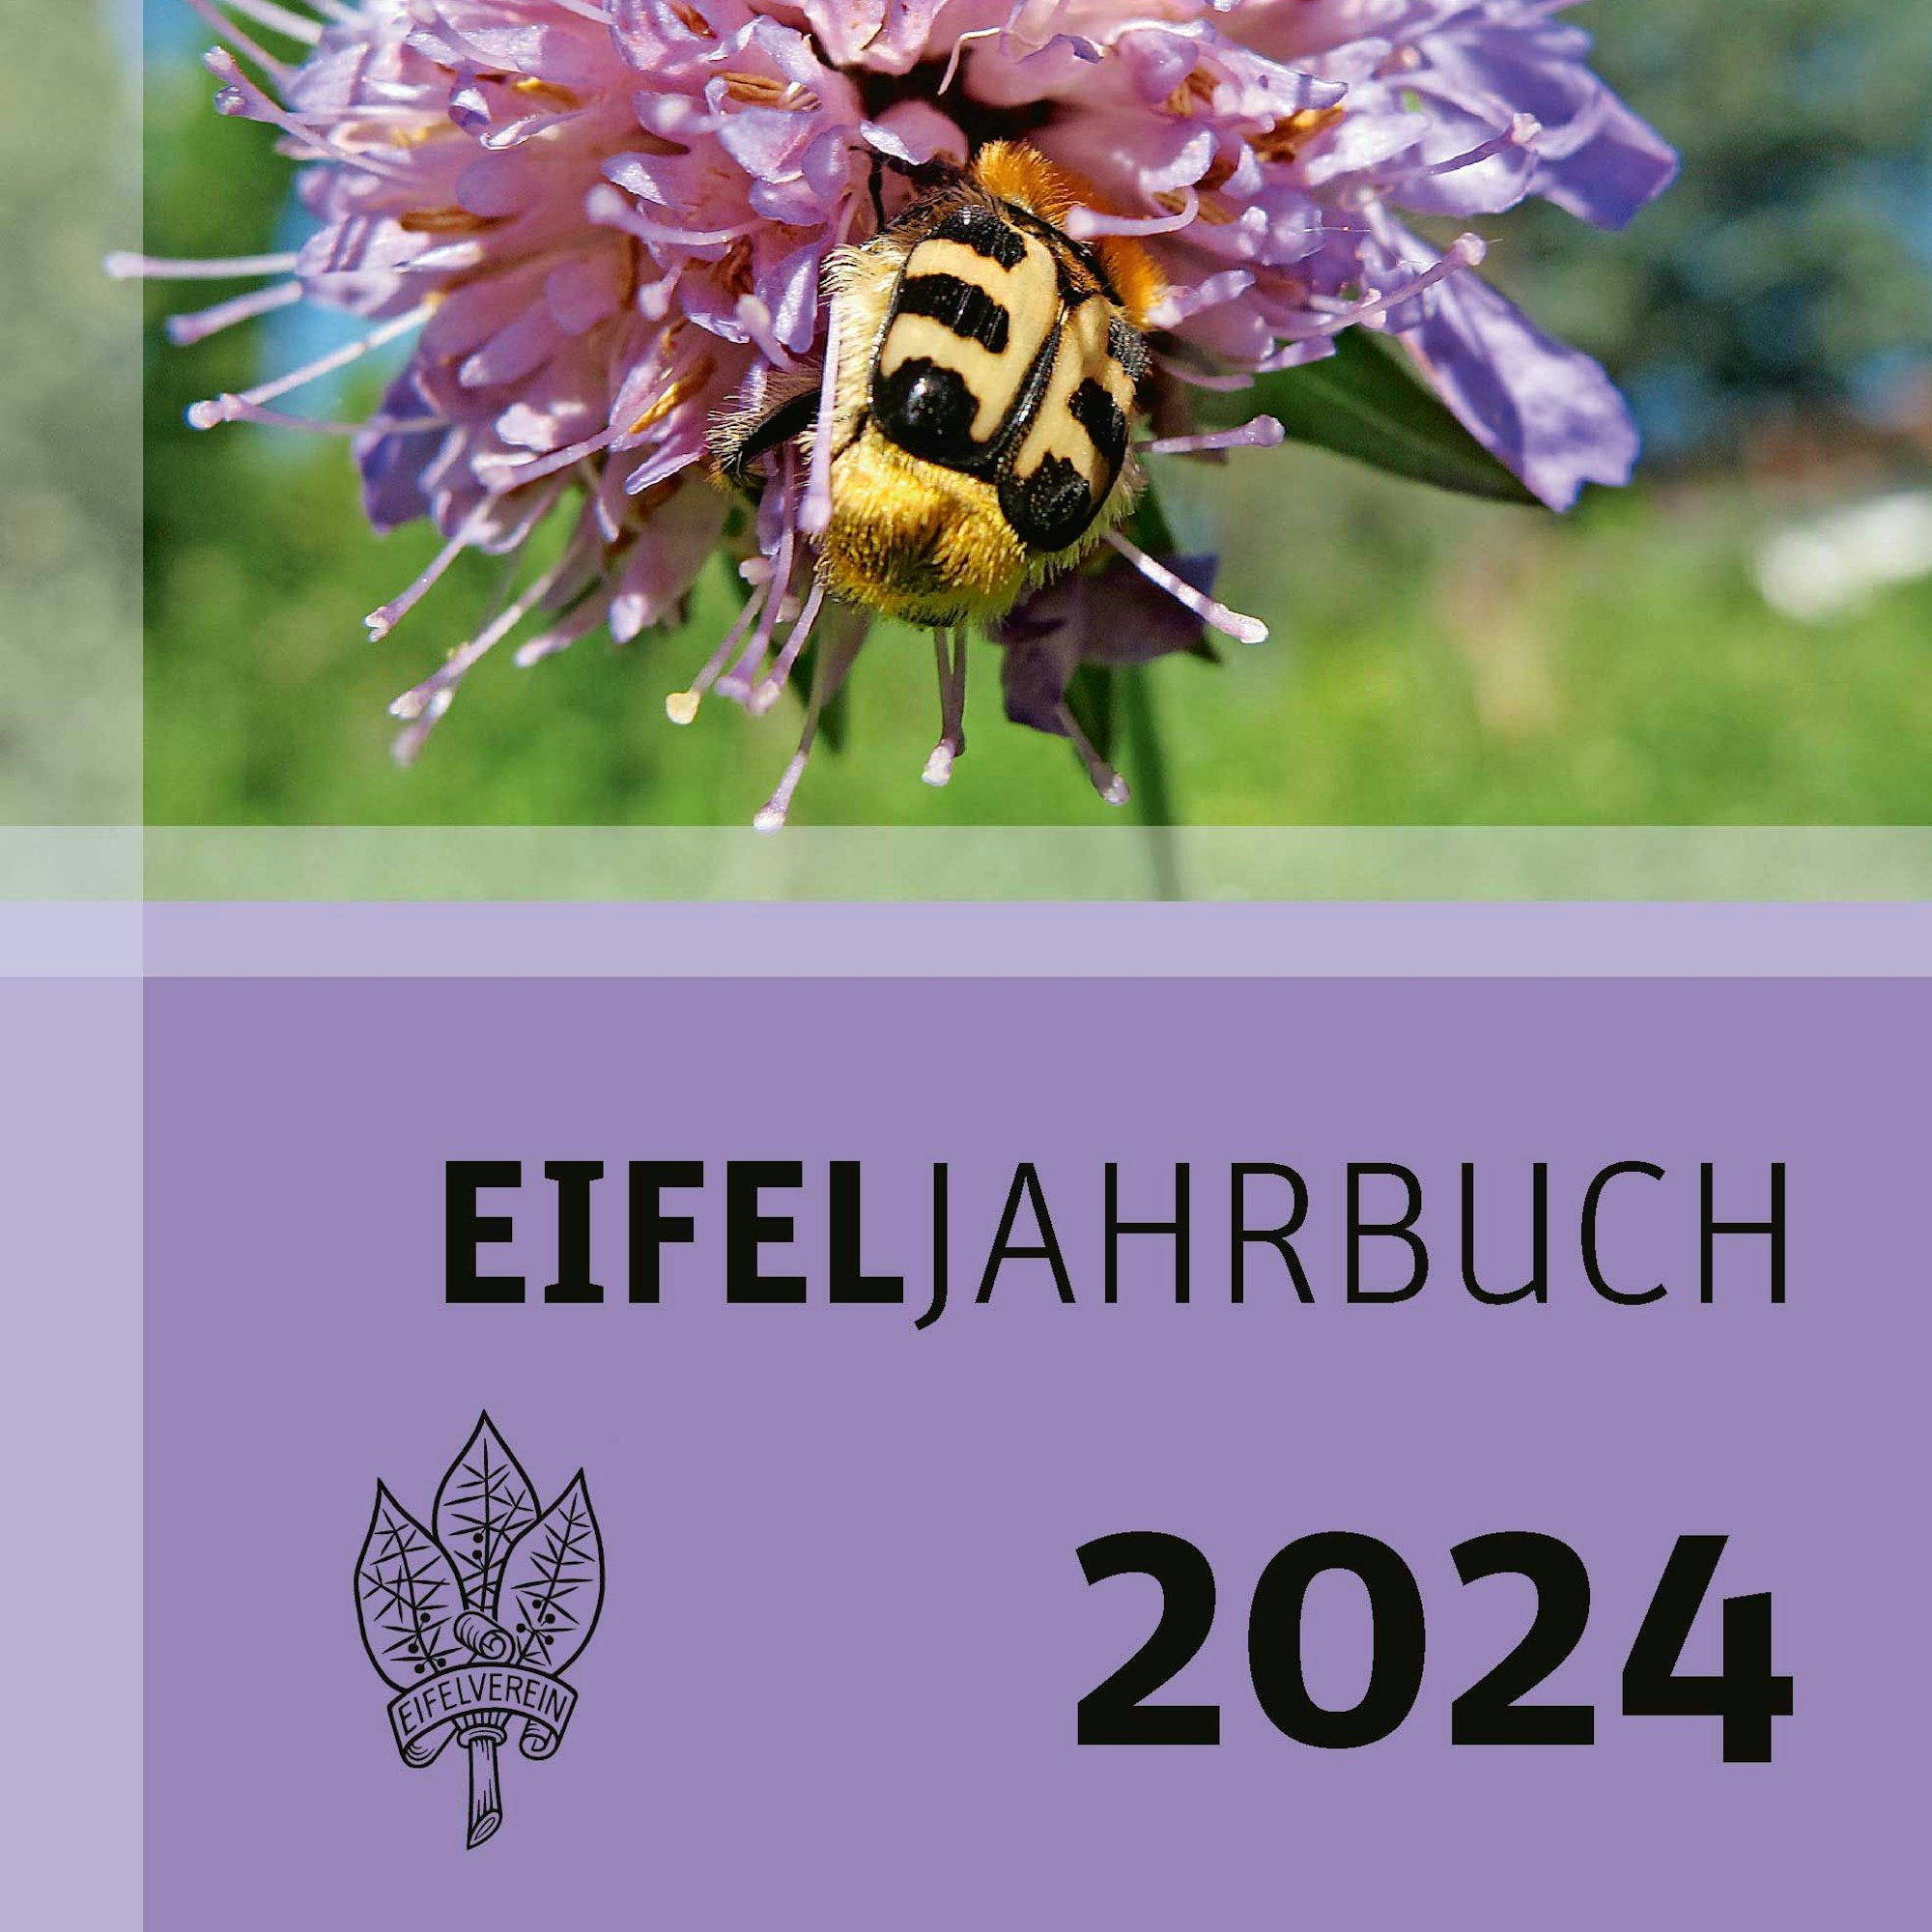 Das Cover des neues Eifeljahrbuchs 2024 des Eifelvereins.